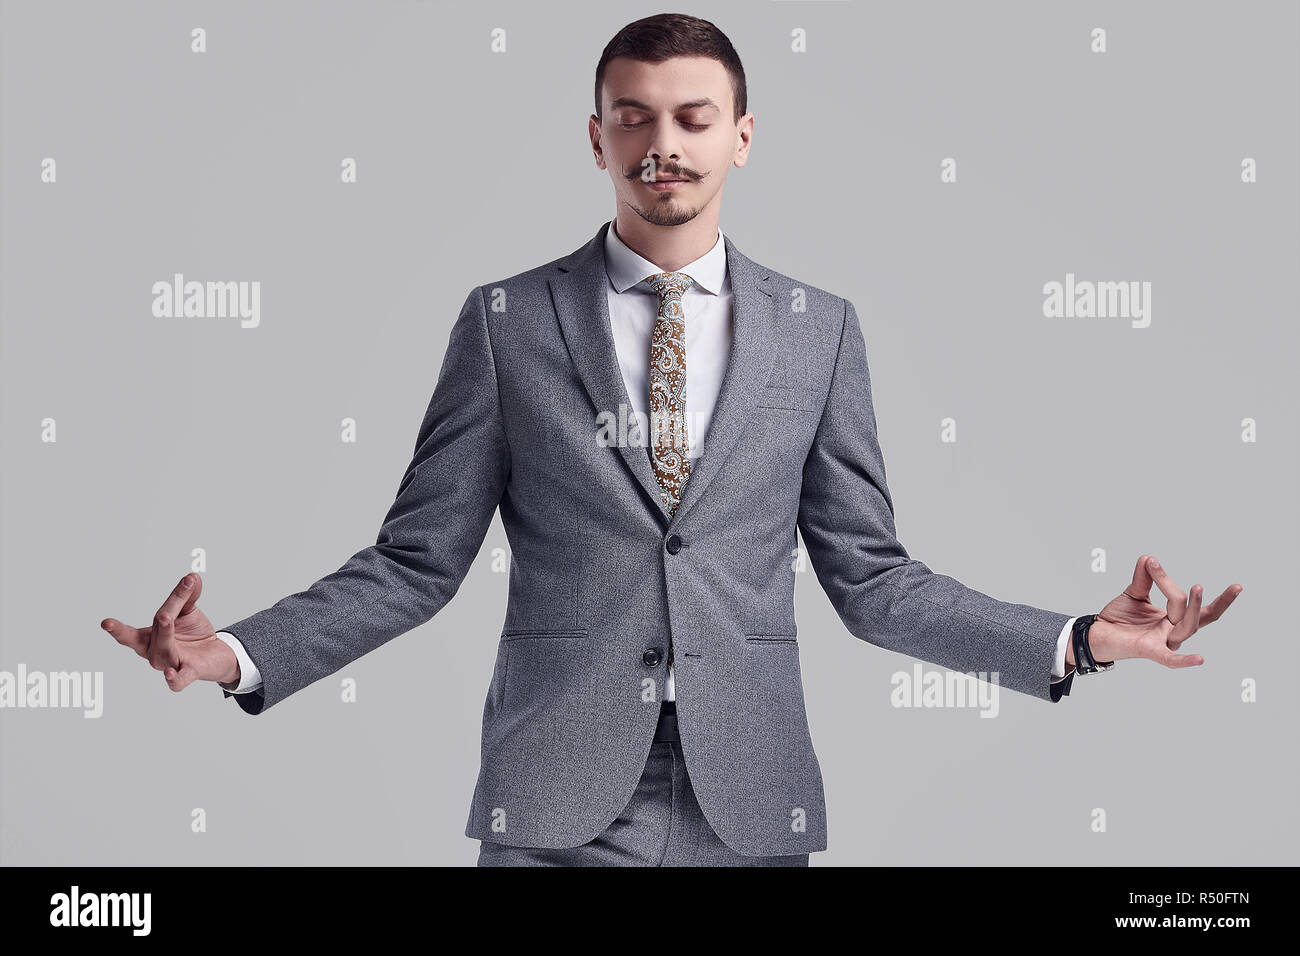 Portrait von gutaussehenden Jungen zuversichtlich arabischer Geschäftsmann mit ausgefallenen Schnurrbart in Mode grauen kompletten Anzug Meditation über studio Hintergrund Stockfoto